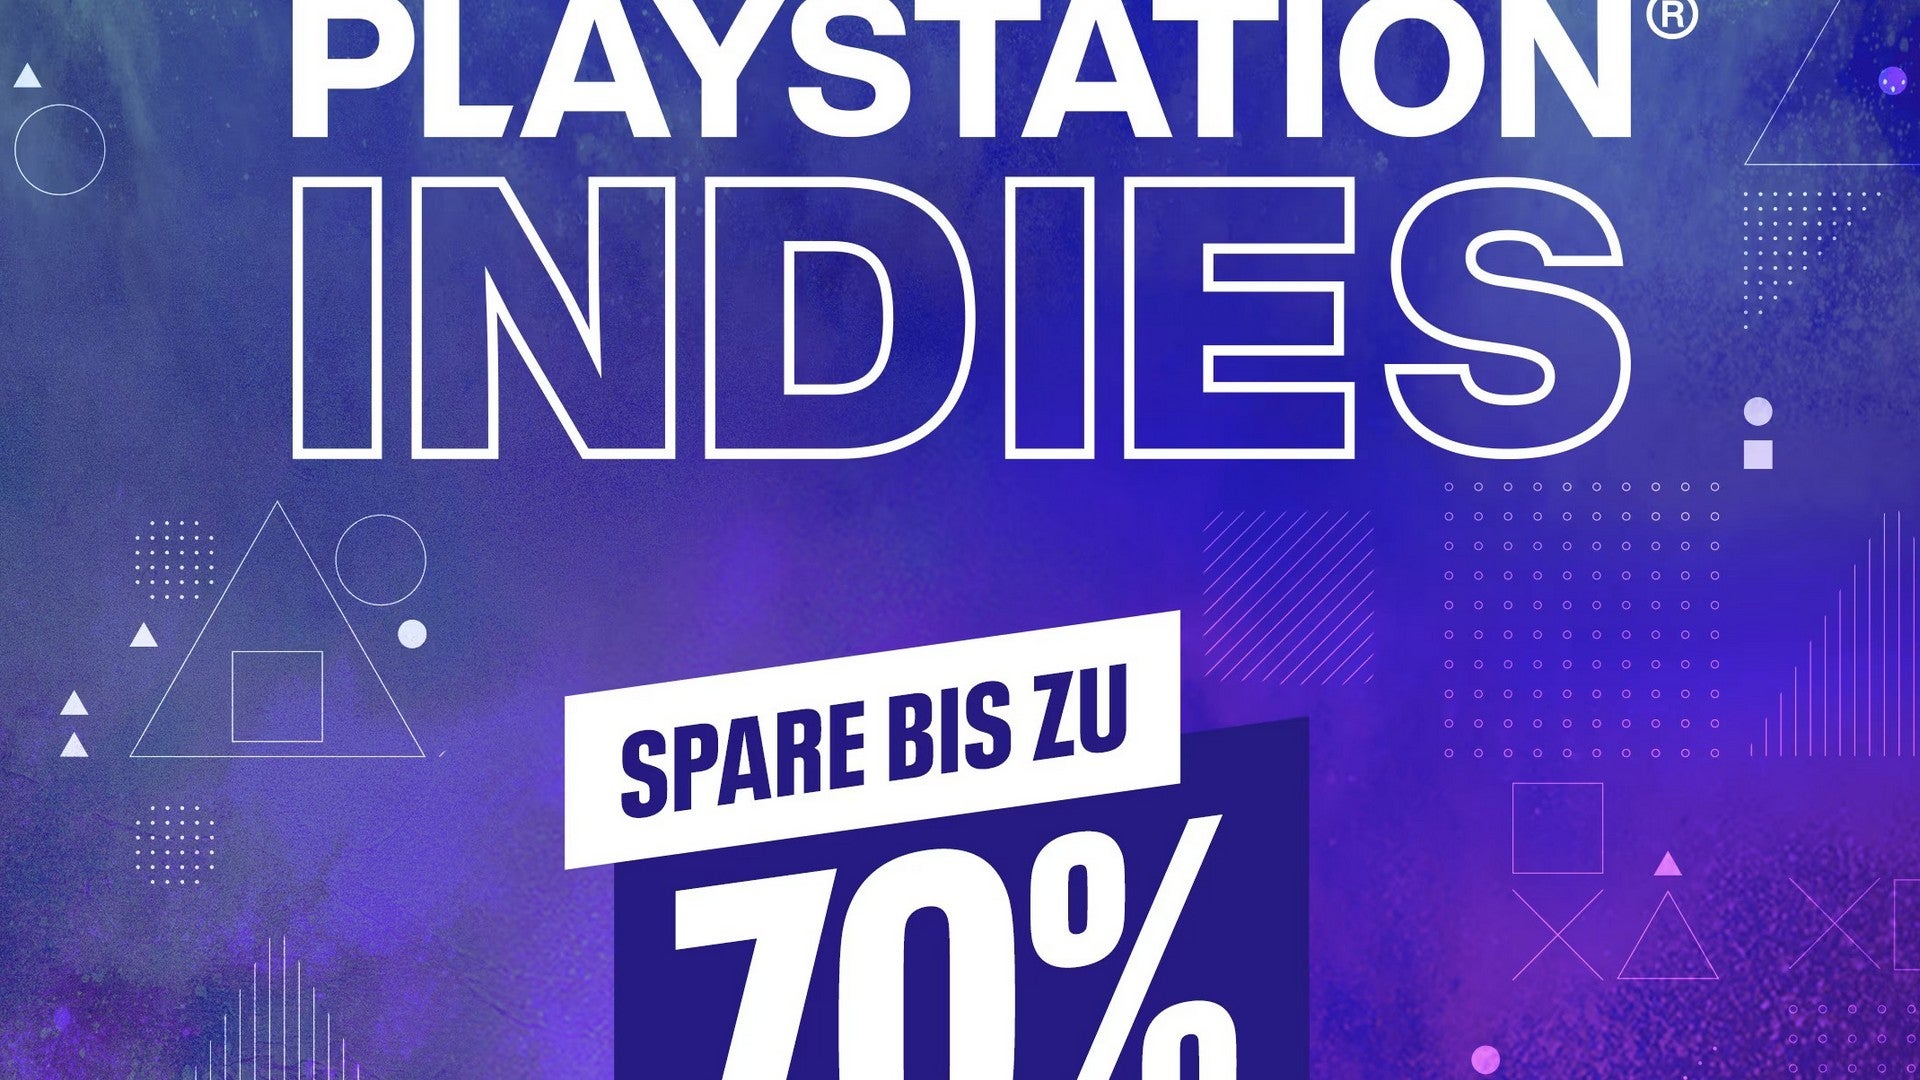 PlayStation Indies im Sale: 10 gute Angebote für unter 5 Euro.